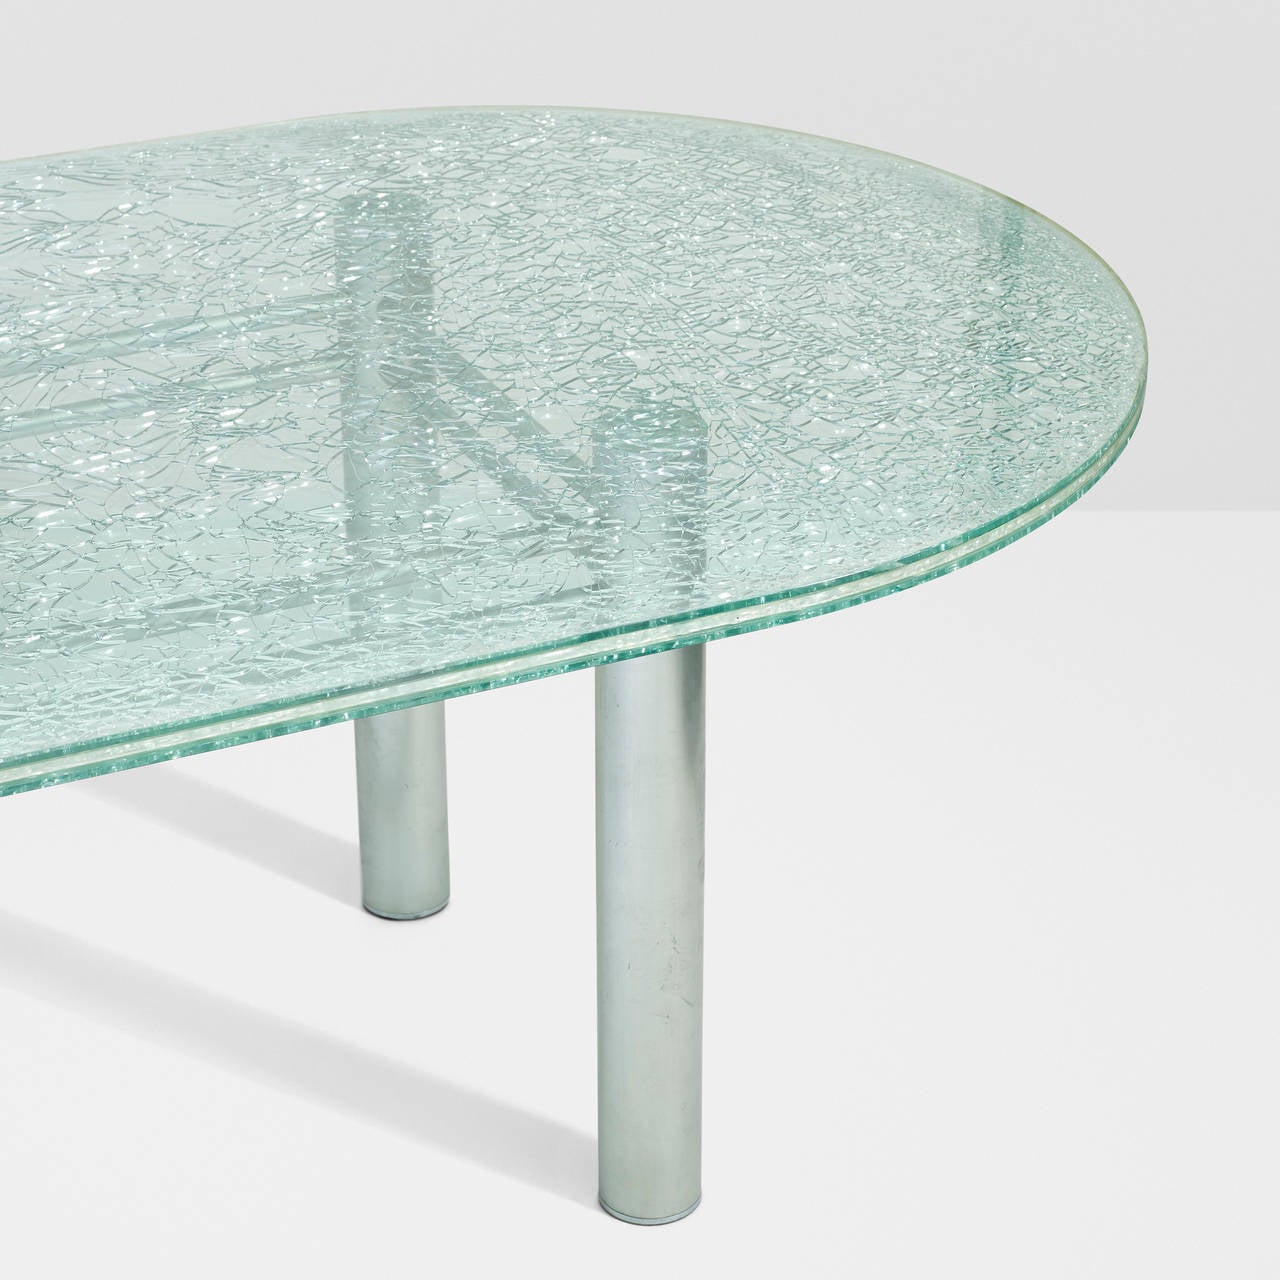 Post-Modern dining table for Tamotsu Yagi by Shiro Kuramata